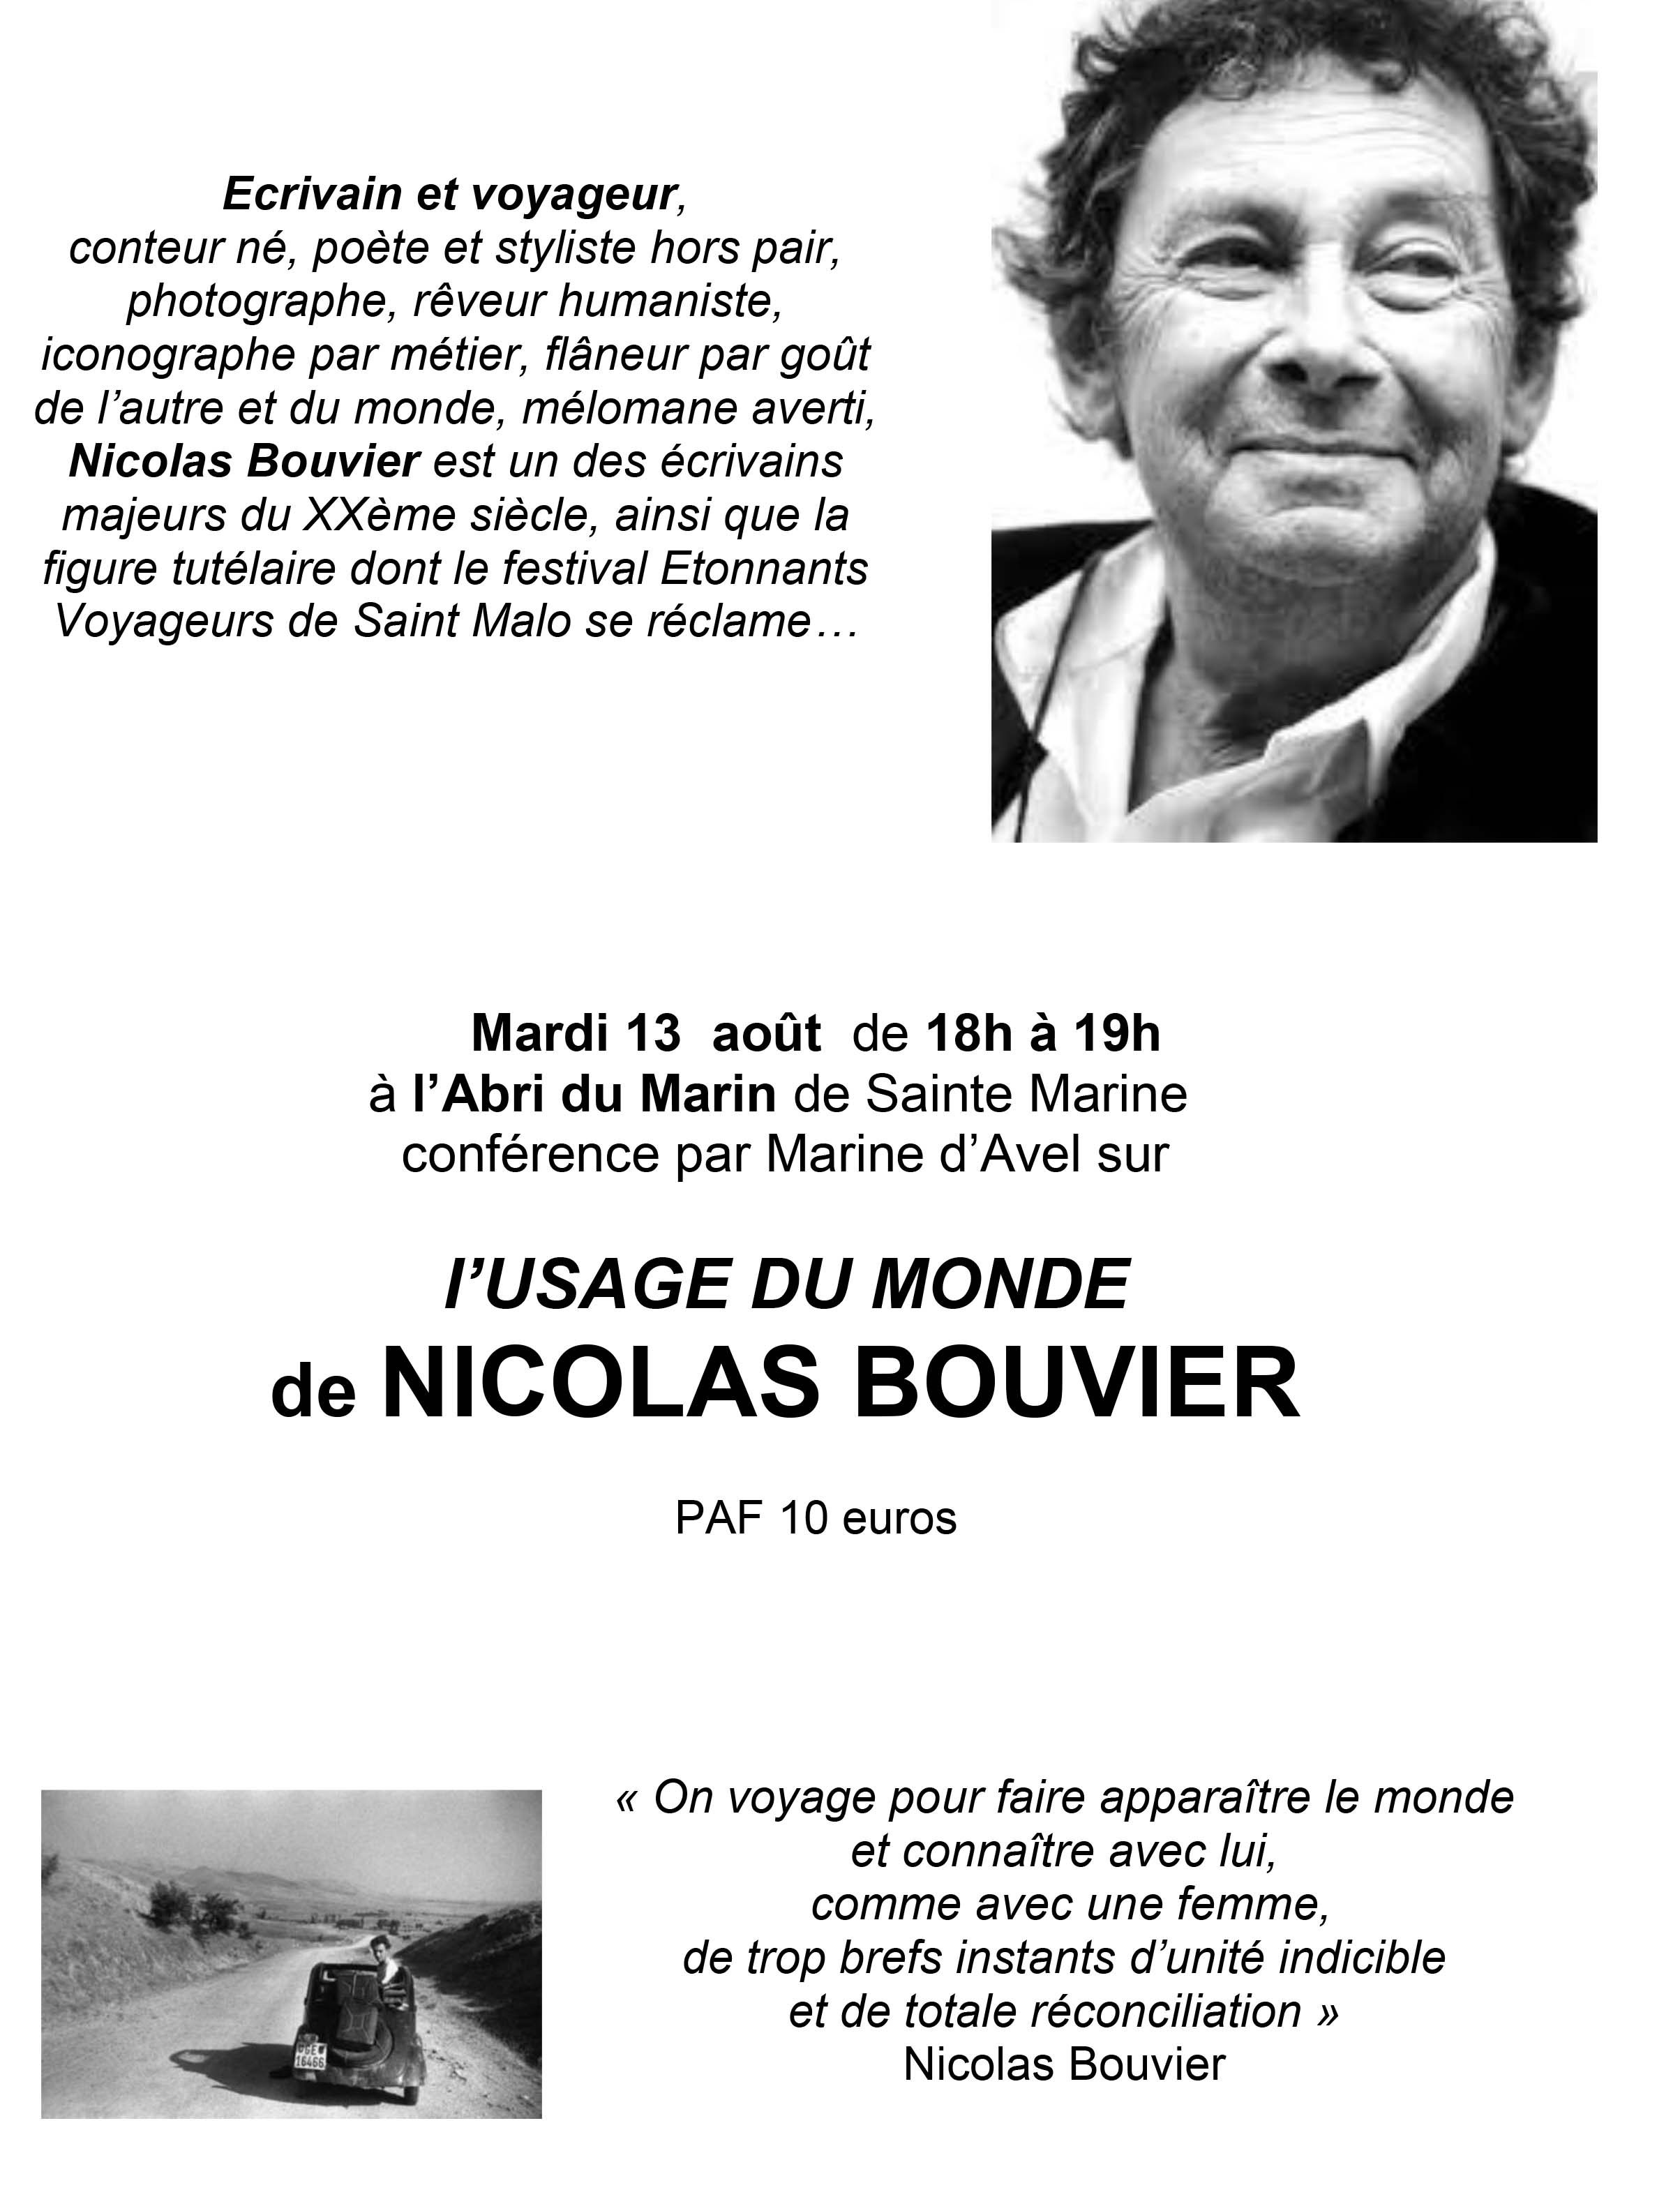 Conférence "L'usage du monde de Nicolas Bouvier"